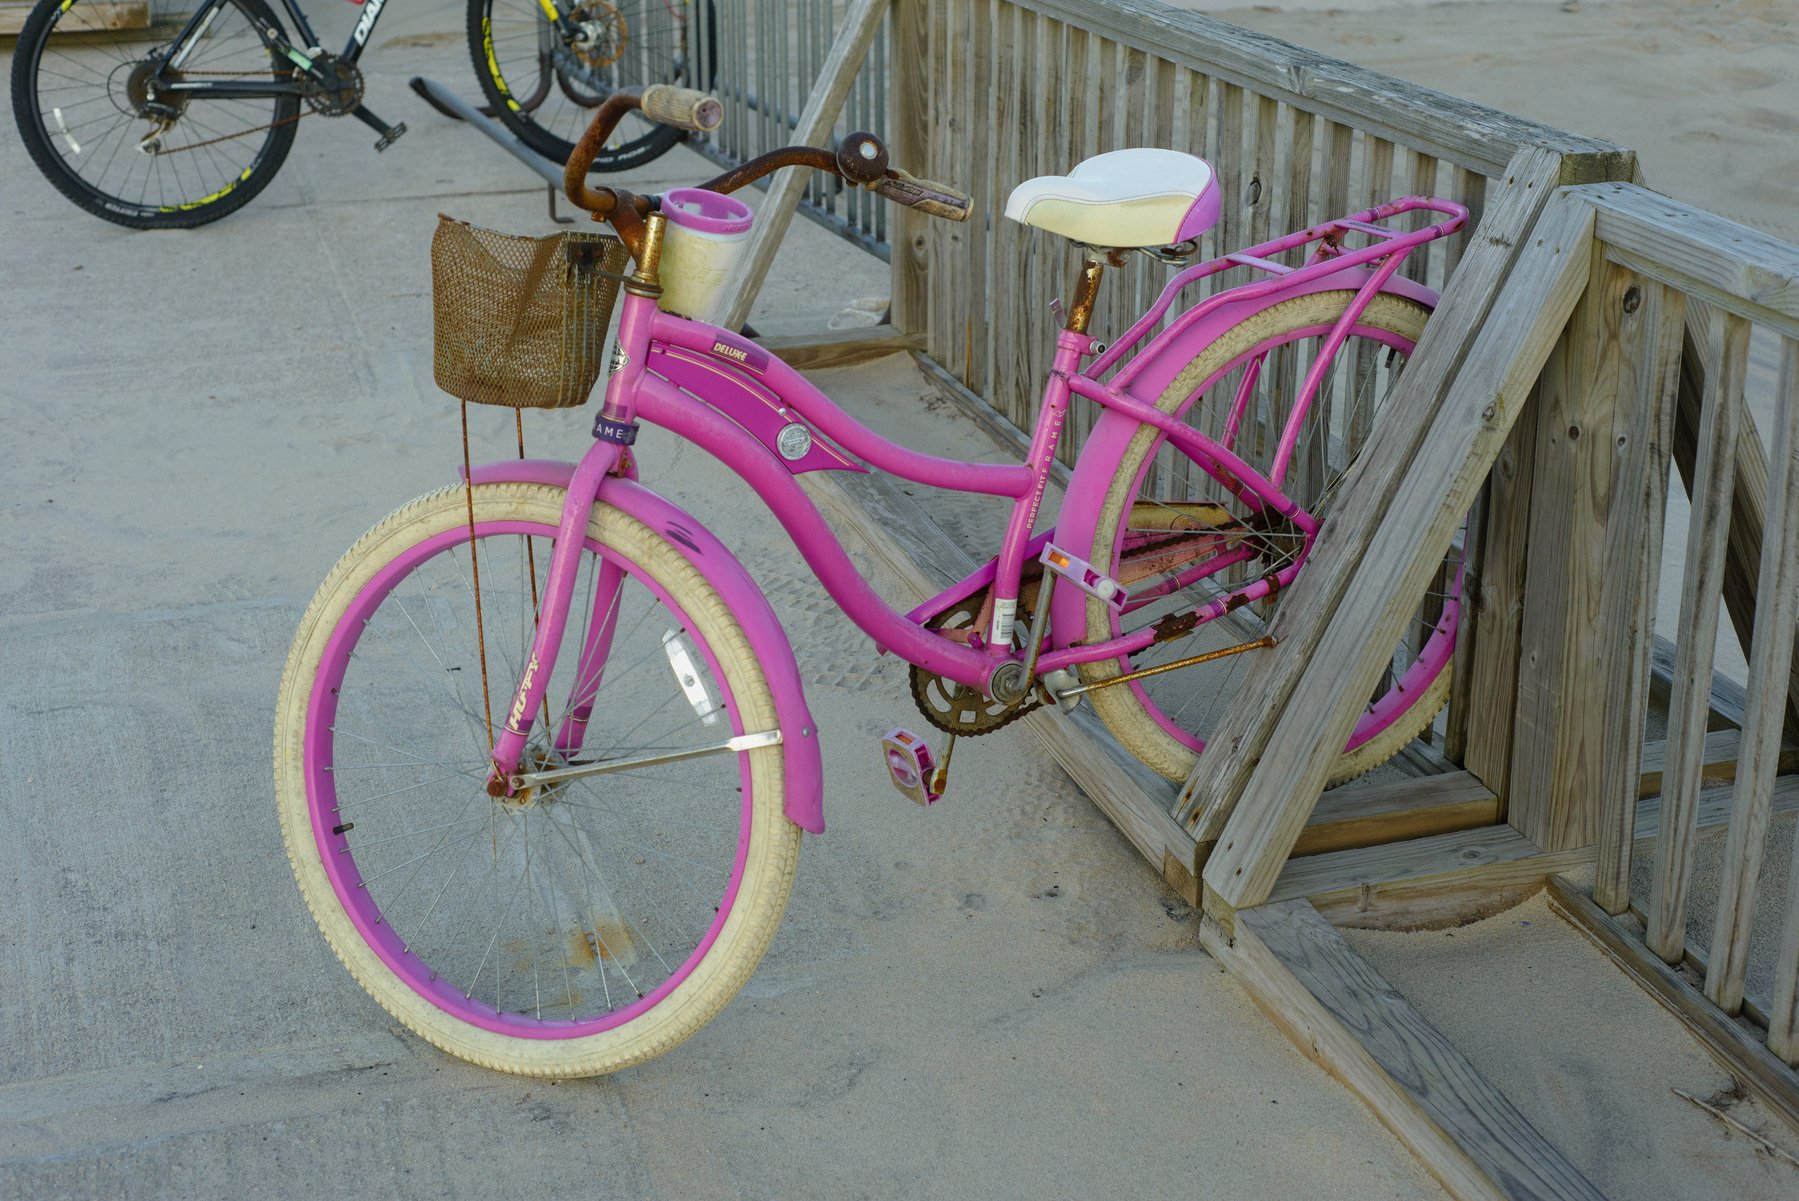 Pink, vintage like woman’s bicycle.